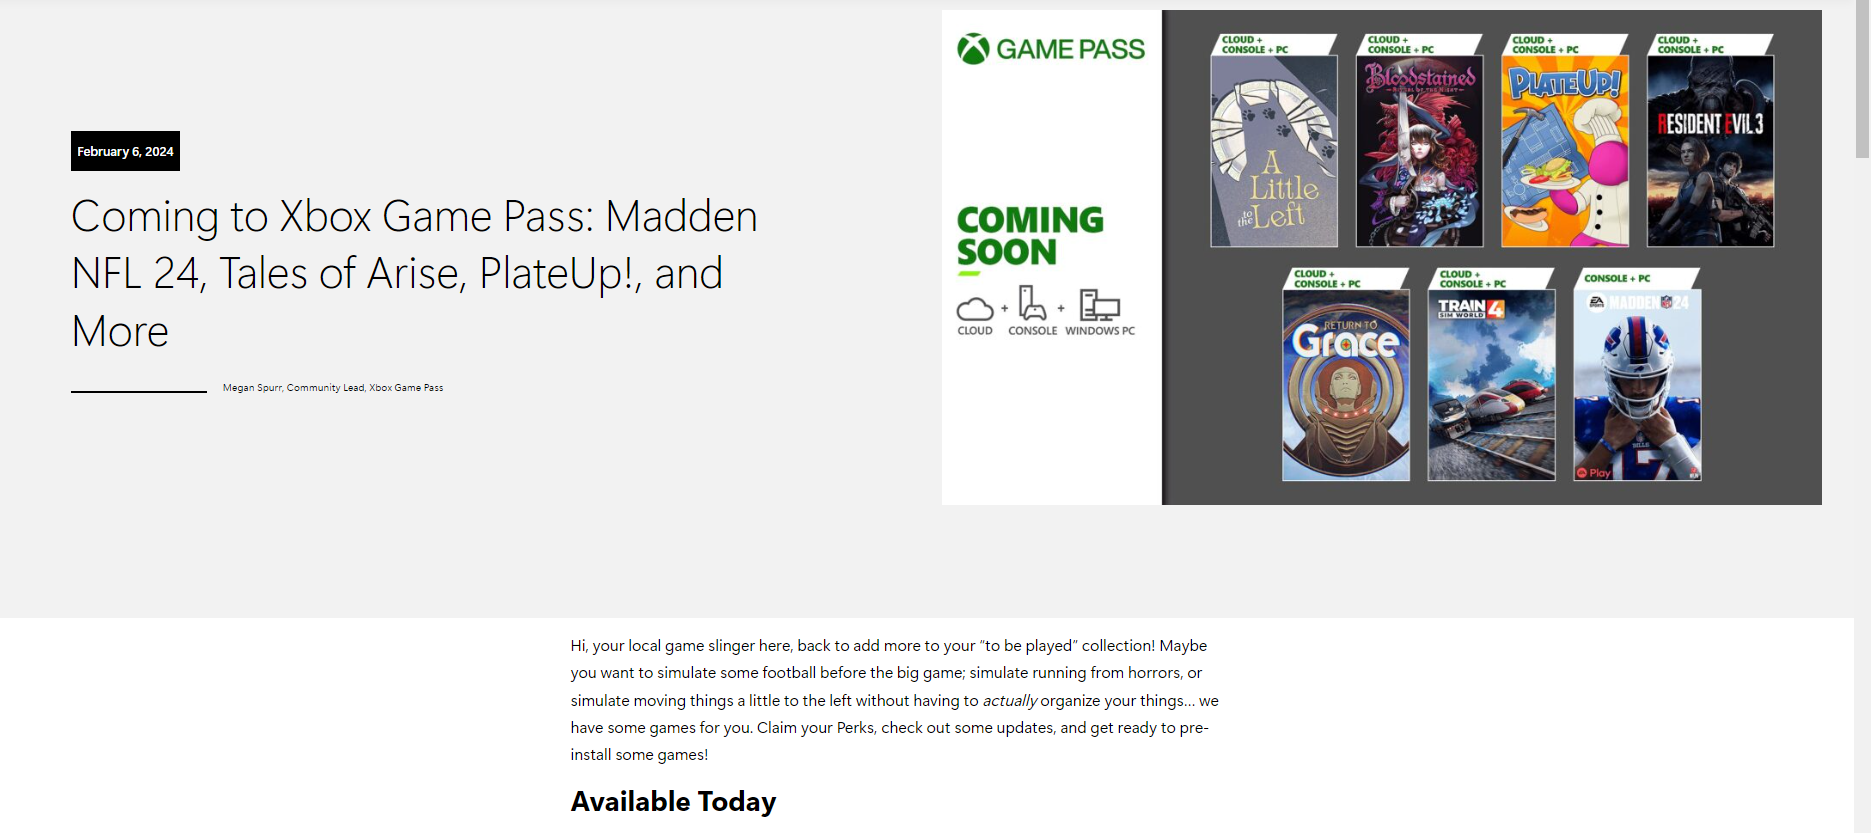 بازی های فوریه برای Xbox Game Pass